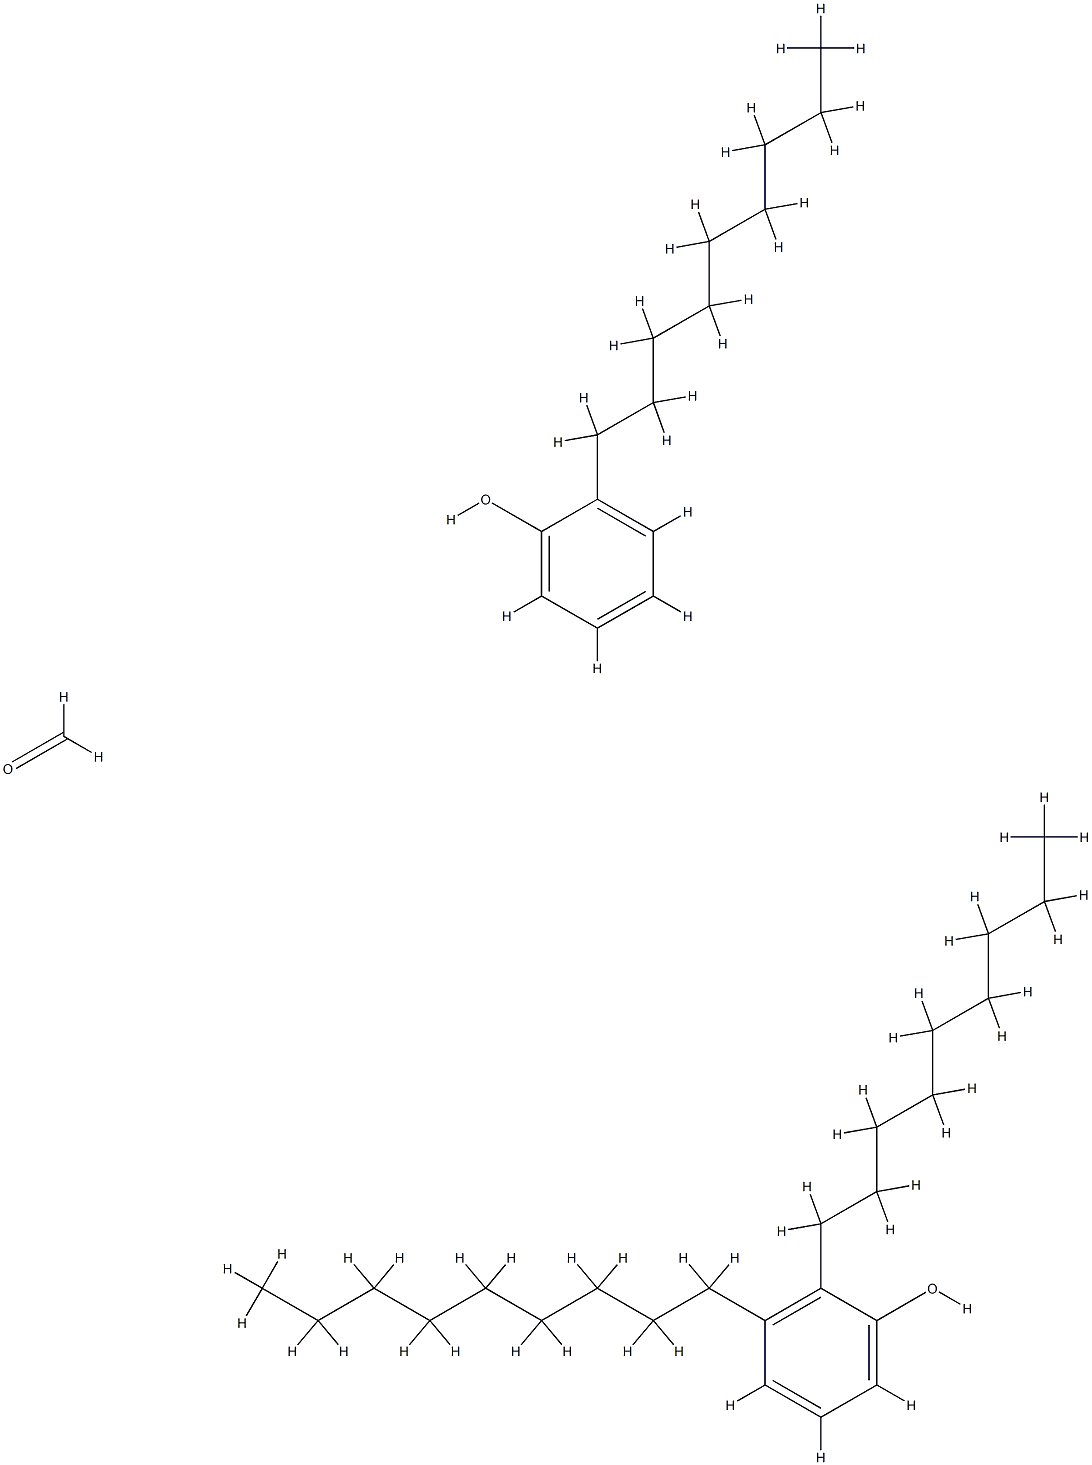 폼알데하이드 폴리머와 결합한 다이노닐페놀과 노닐페놀 구조식 이미지